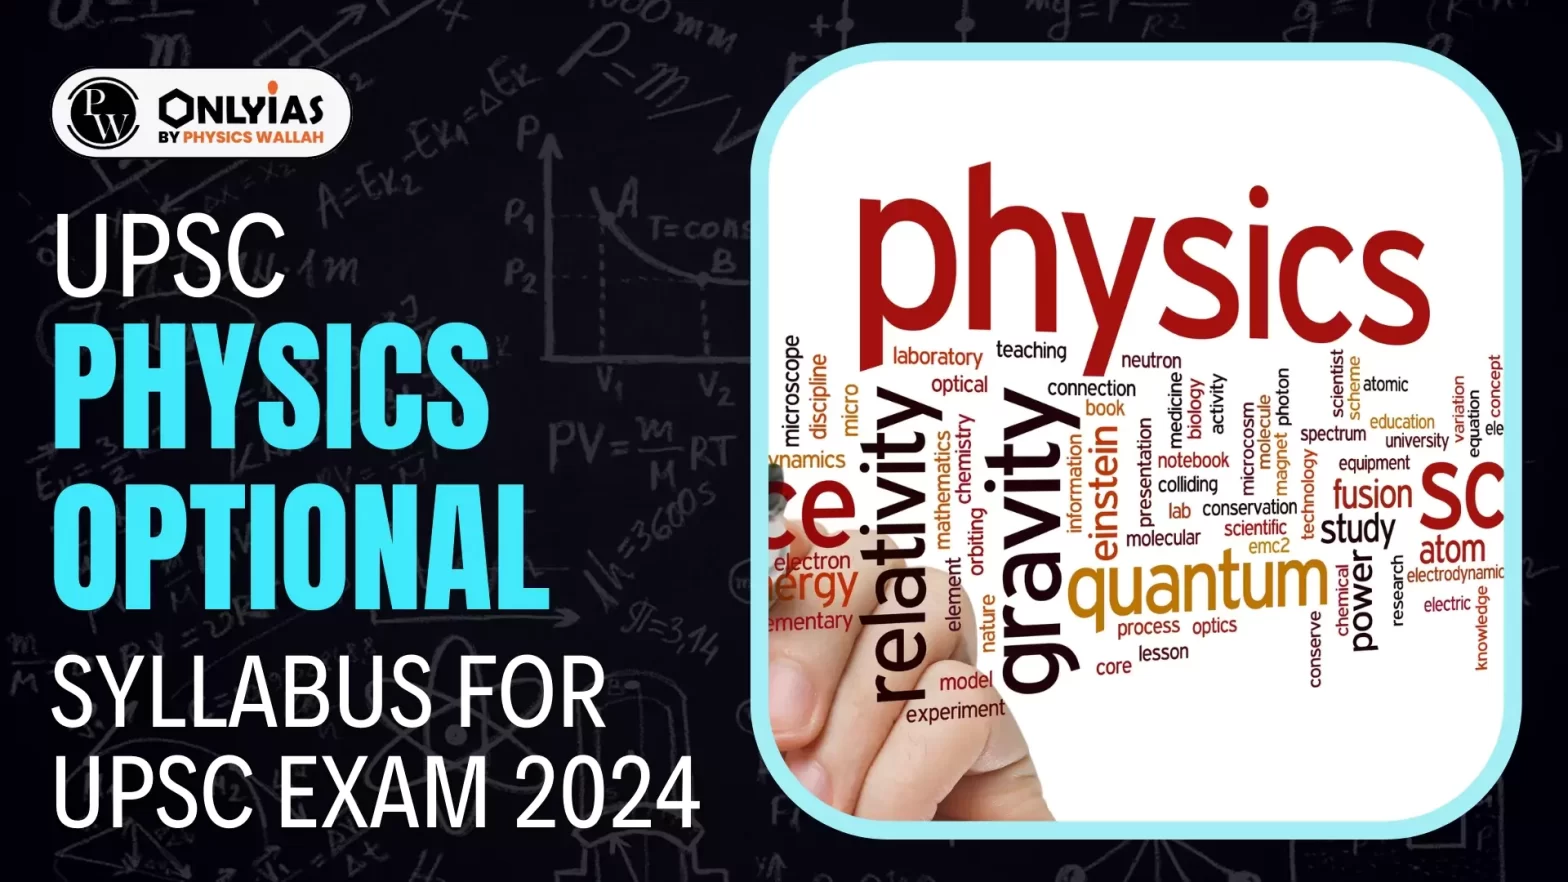 UPSC Physics Optional Syllabus For UPSC Exam 2024